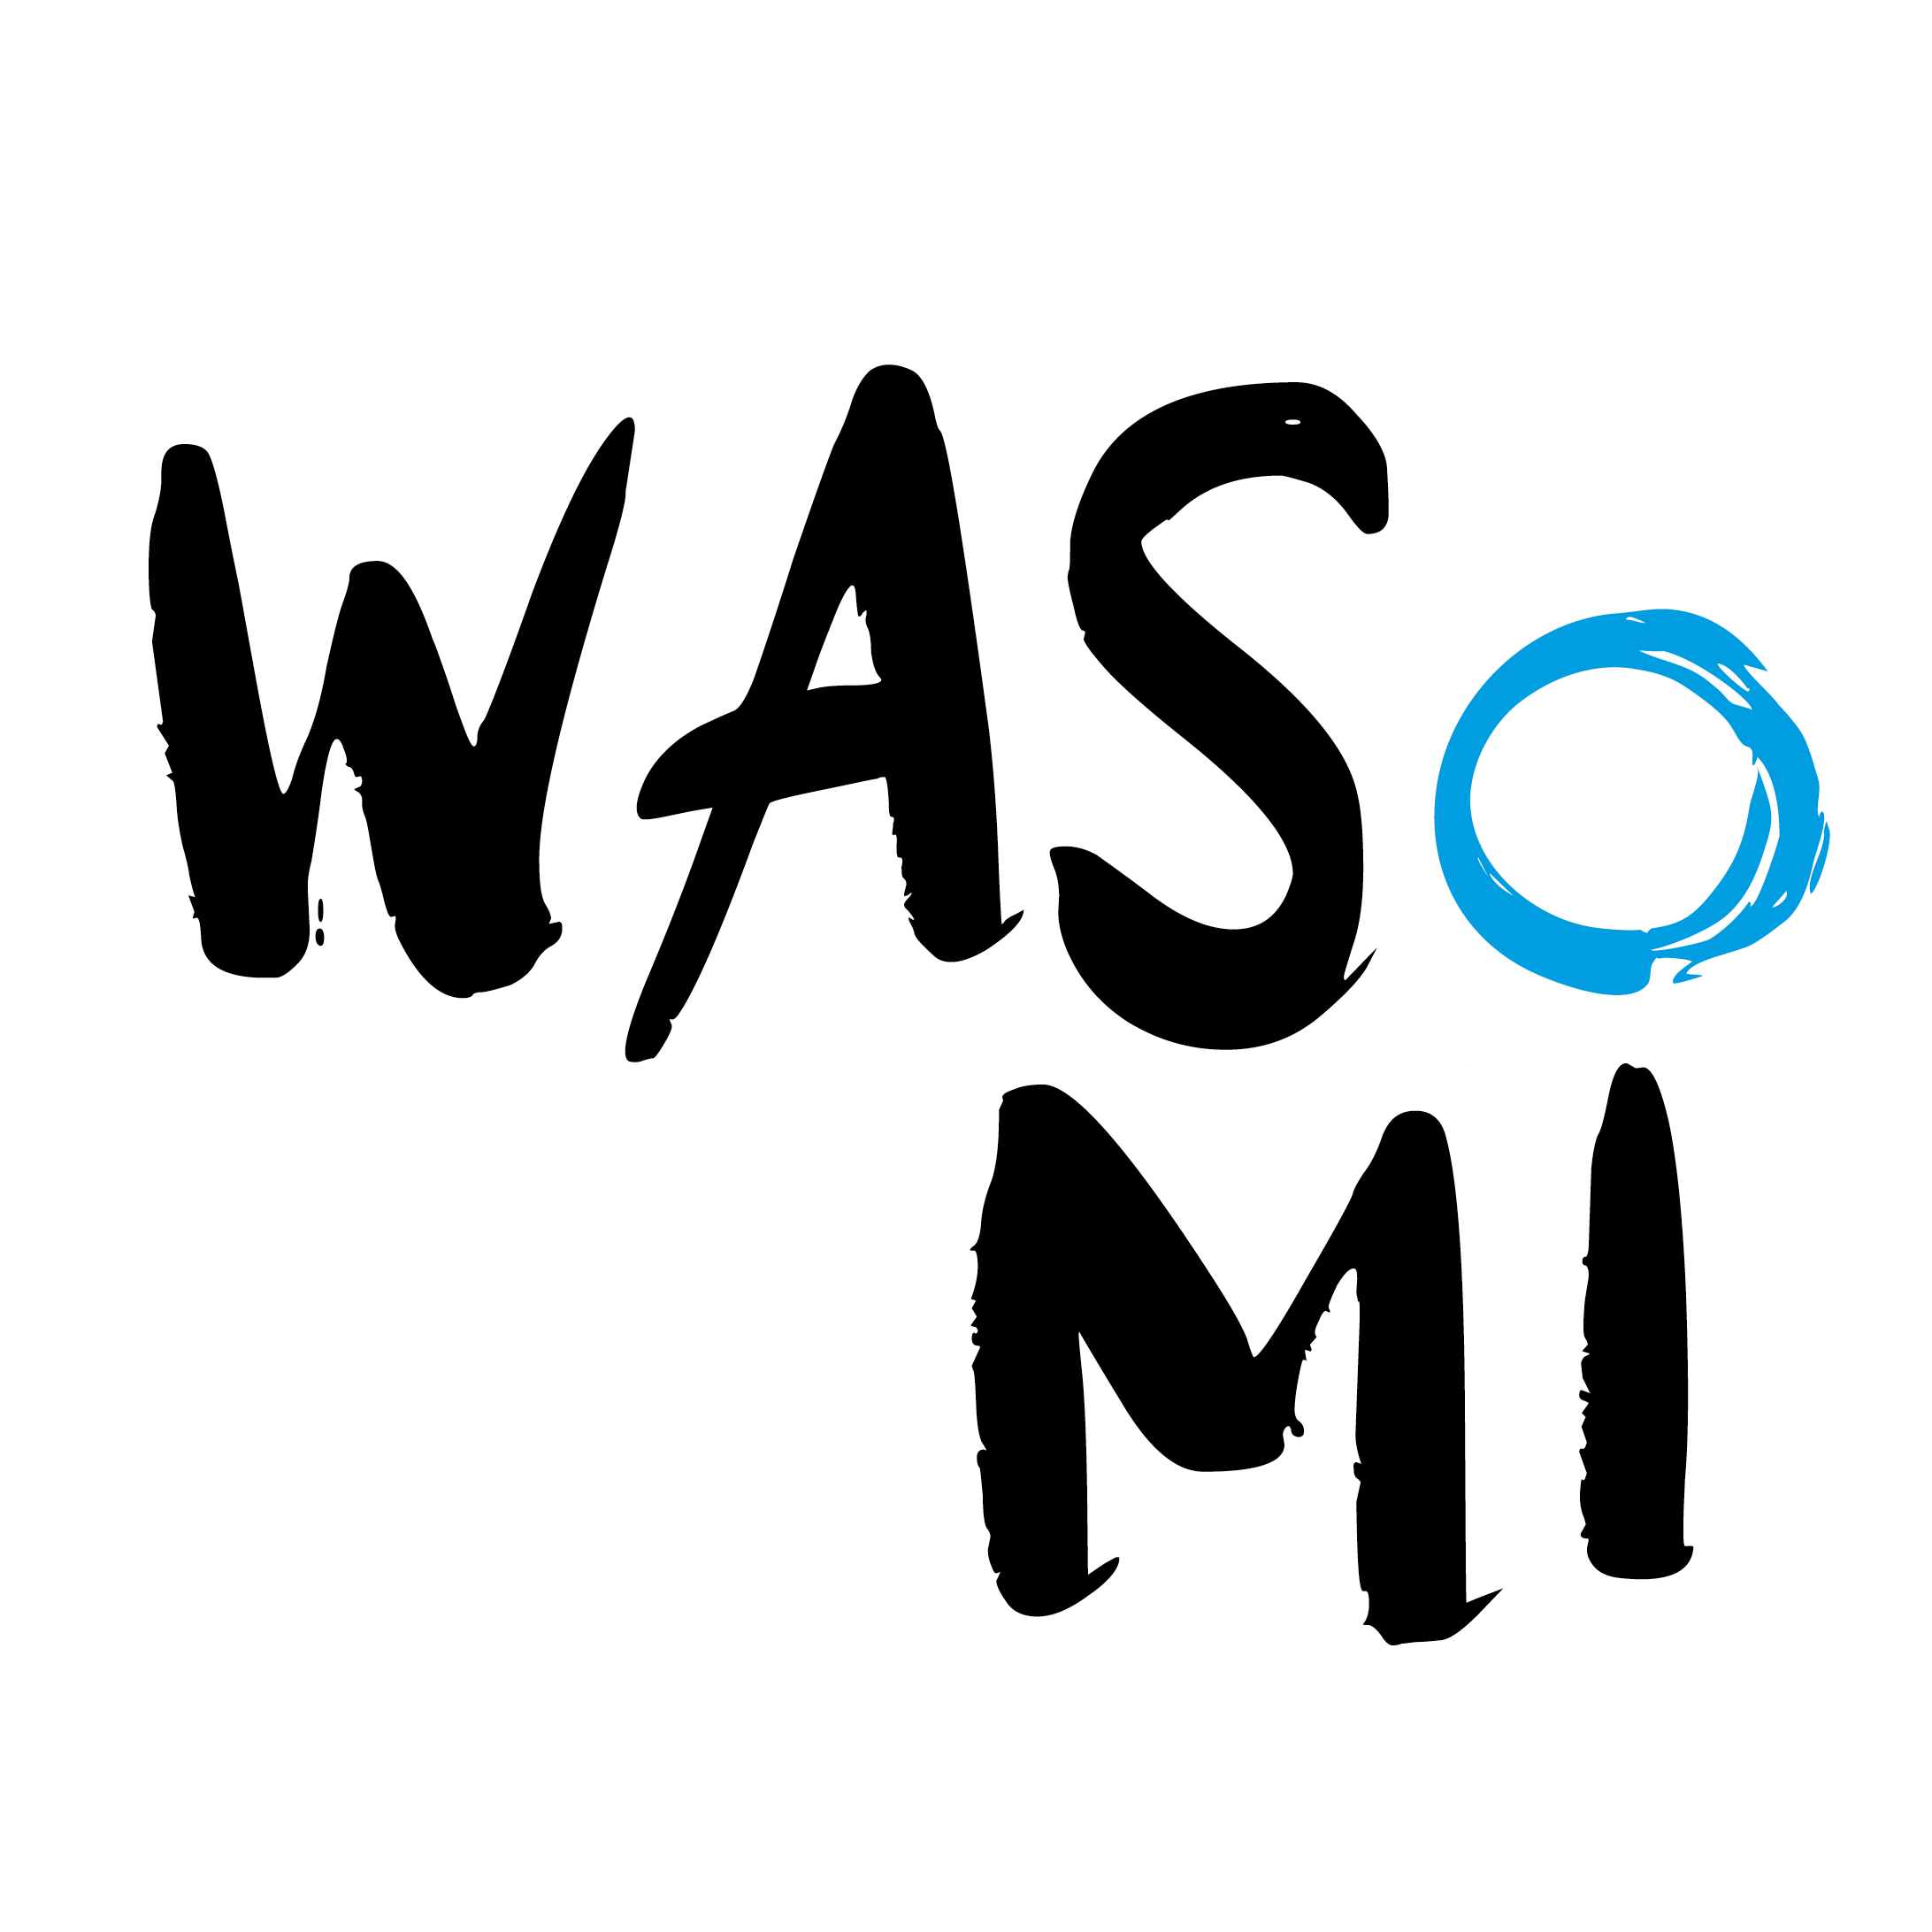 Klicken Sie sich rein in den digtal-realen Bildungsraum WASoMi mit seinem WASoMI Lab